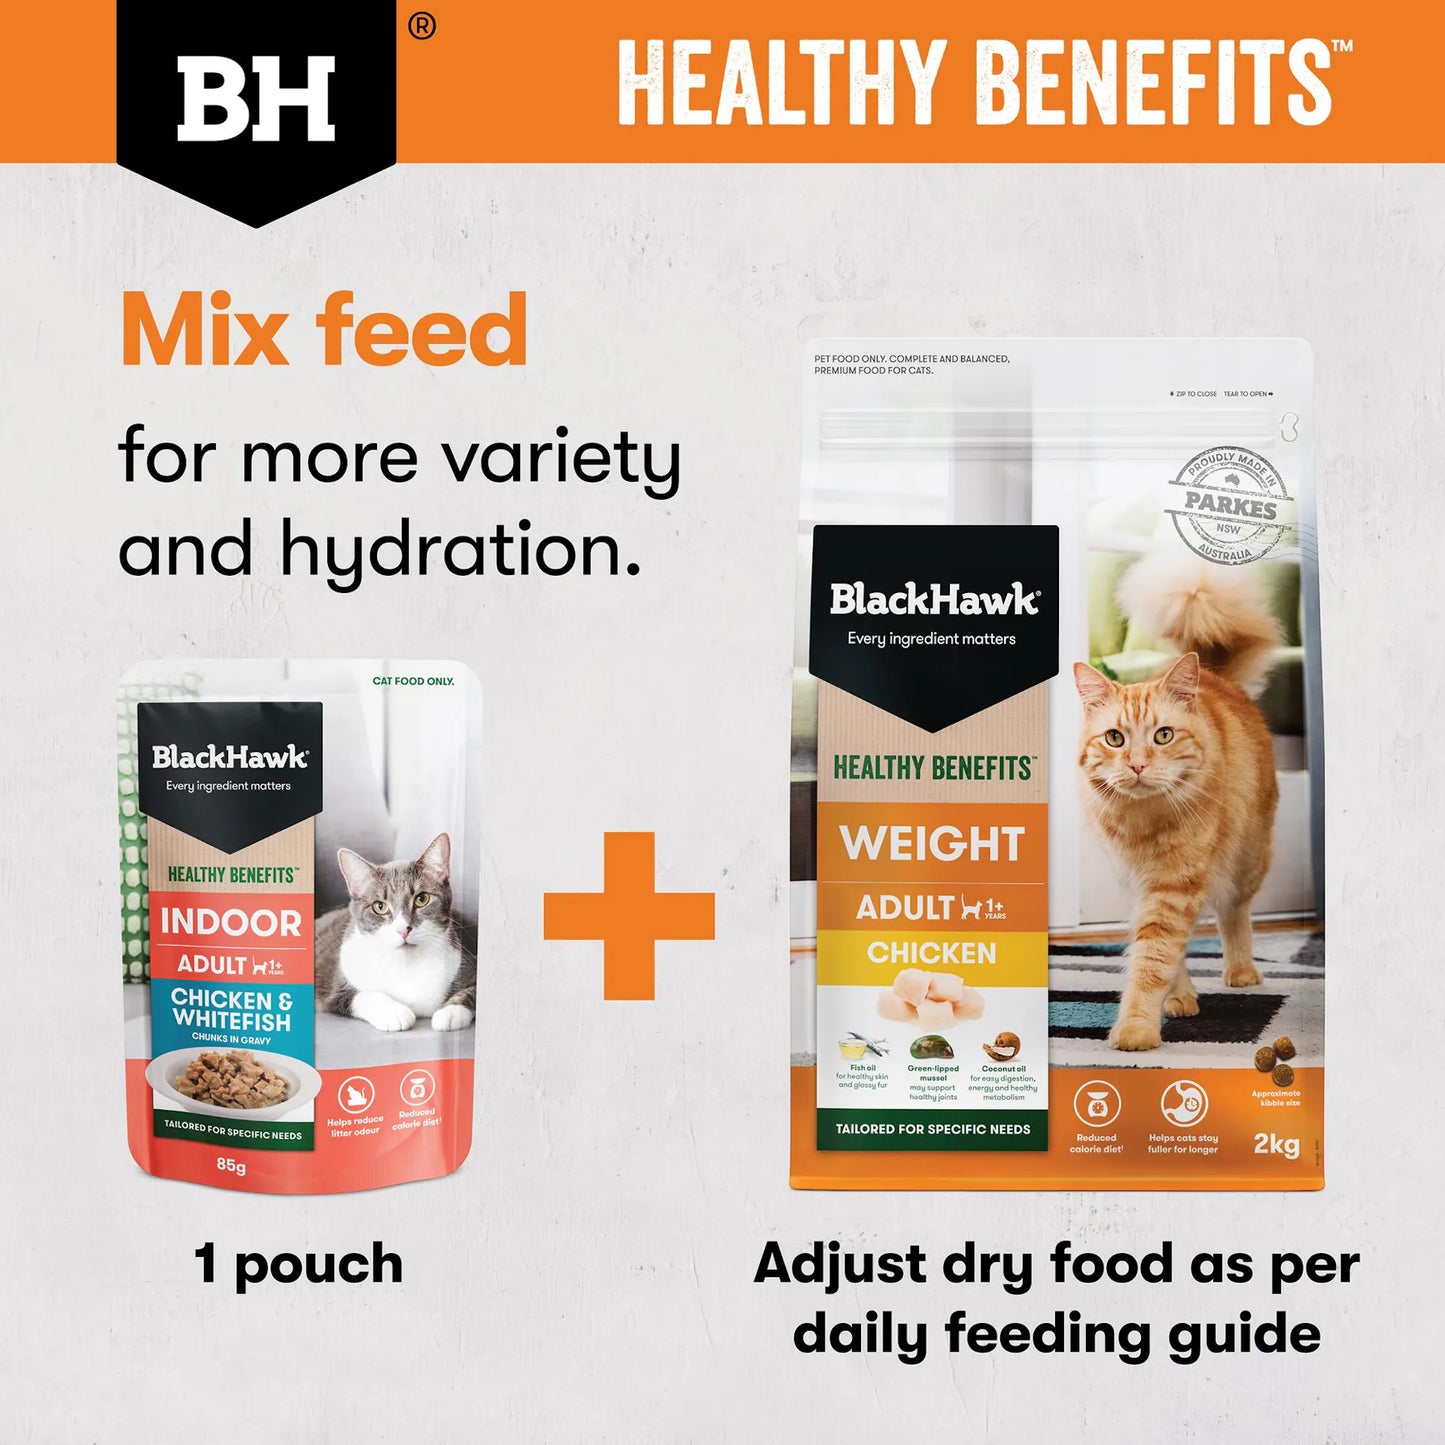 BlackHawk (NEW): Cat Healthy Benefits Weight Chicken